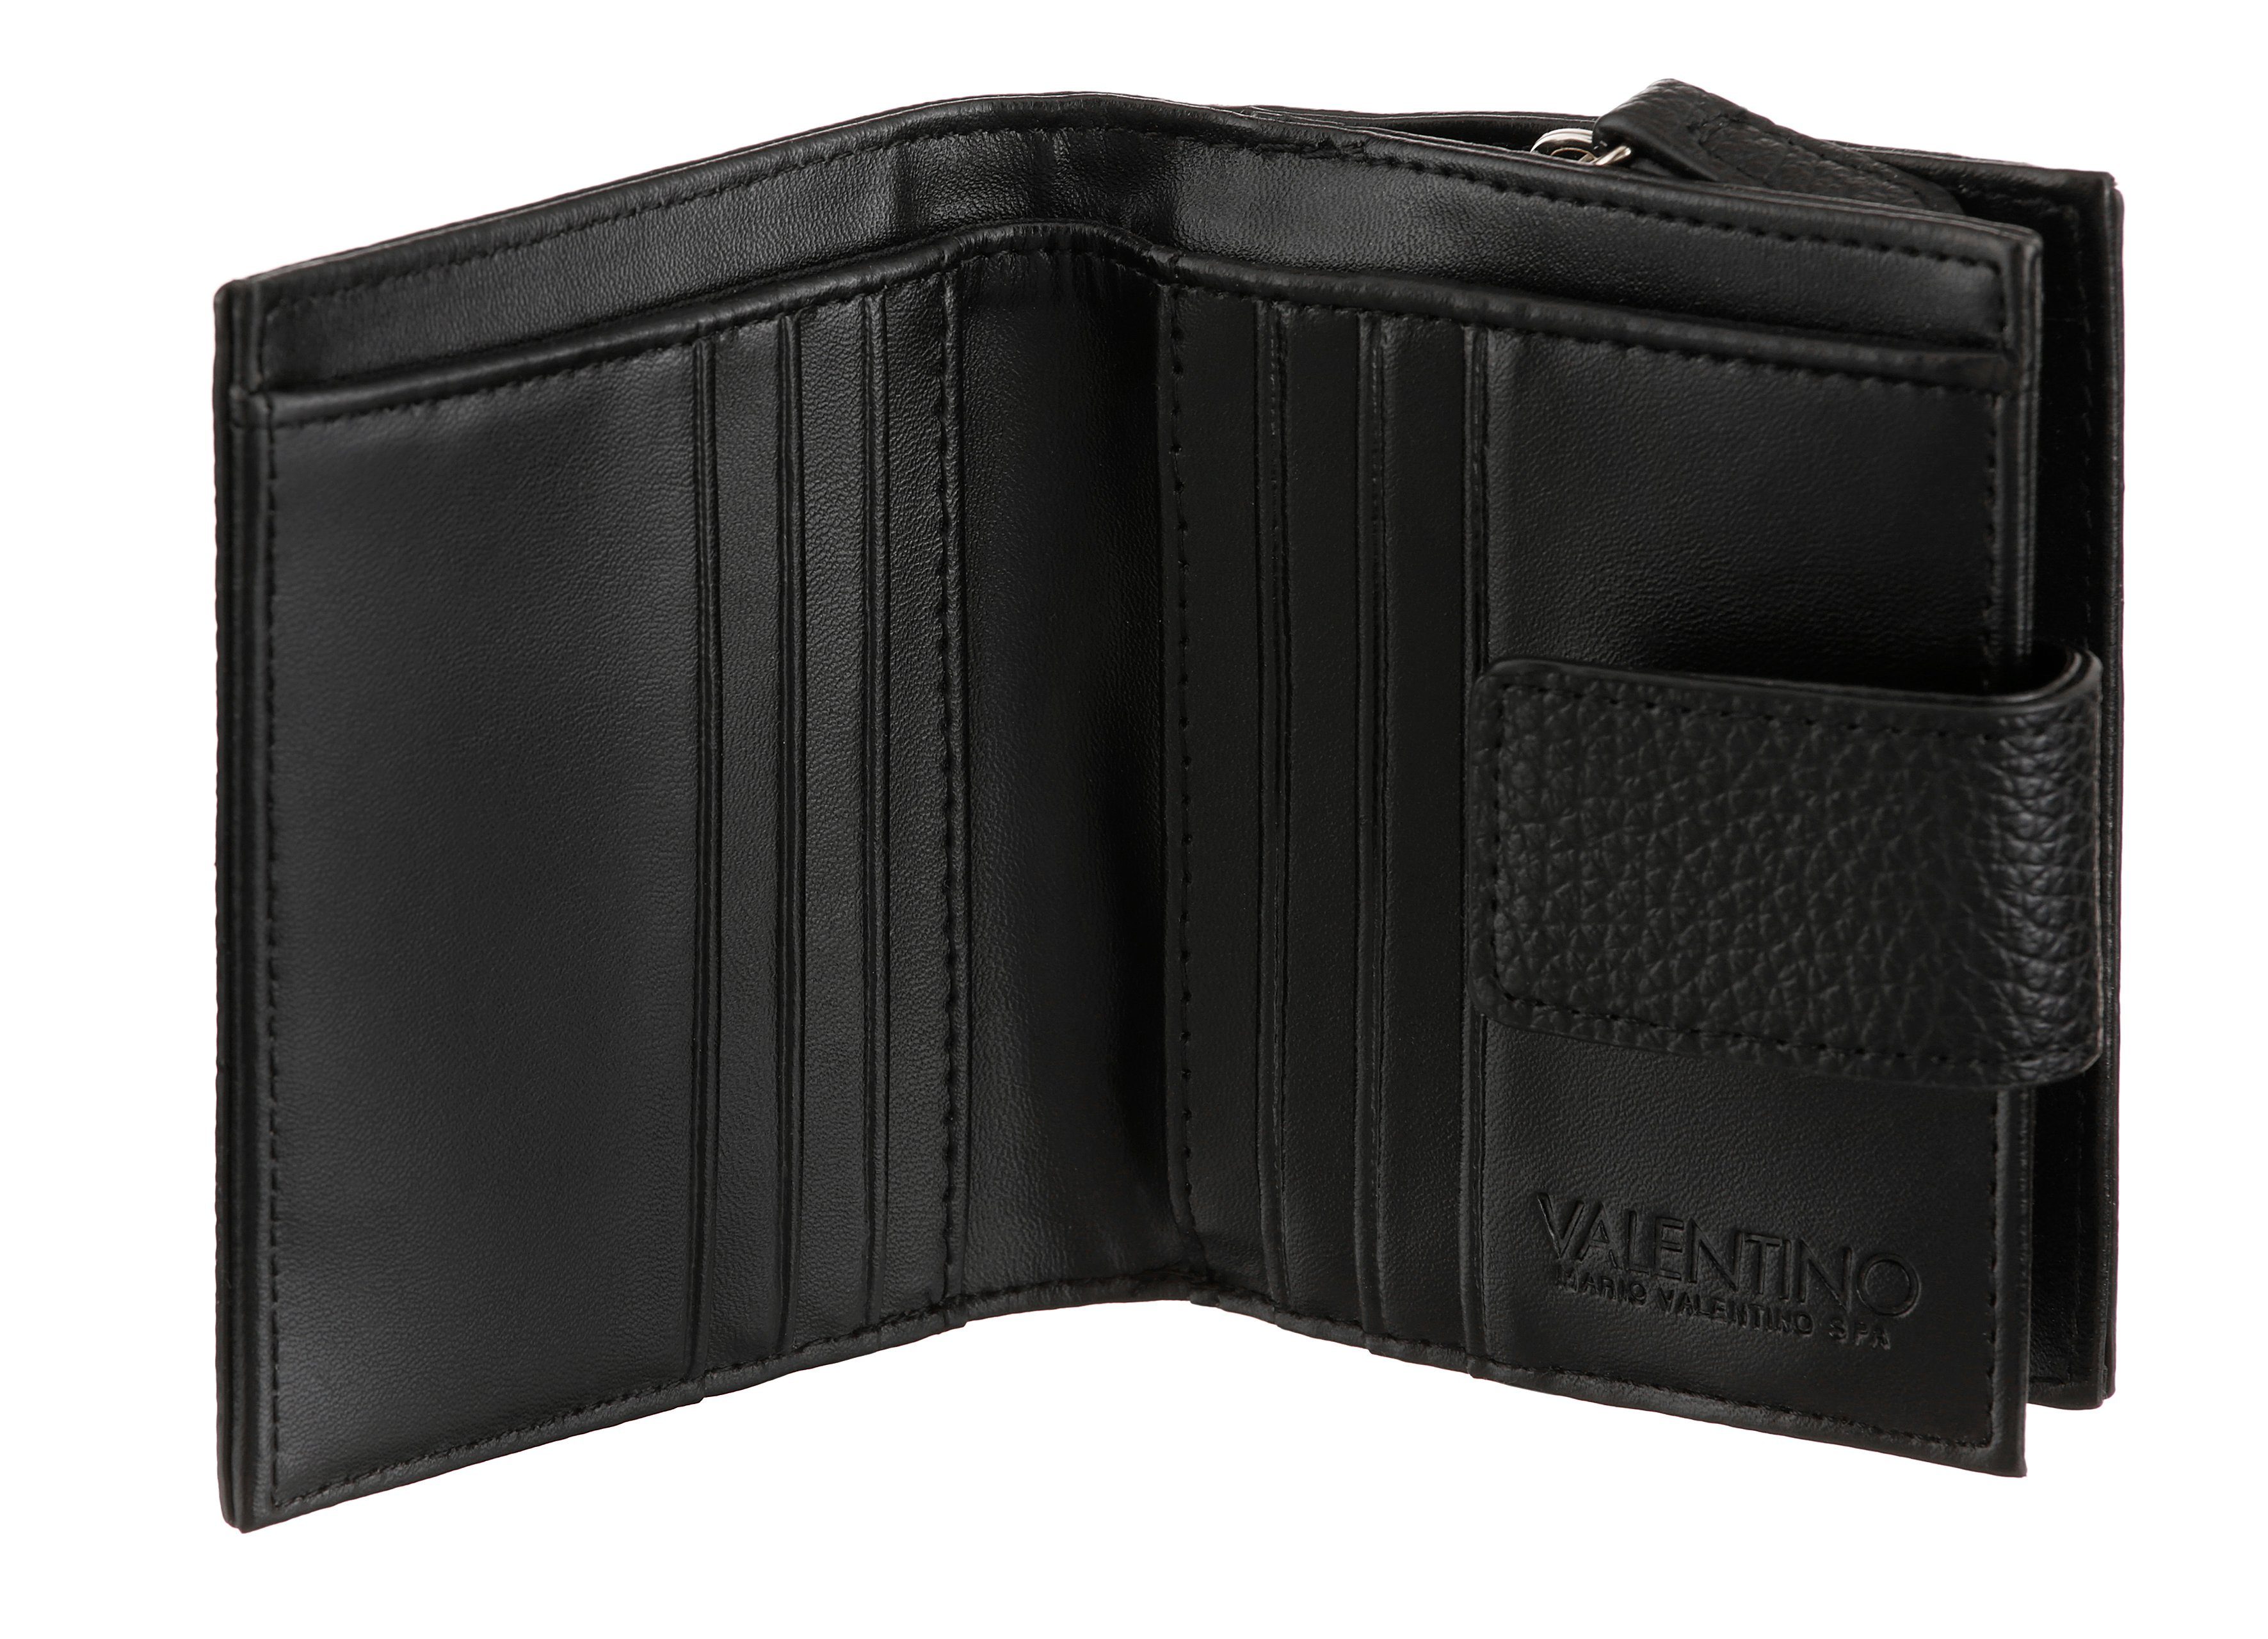 VALENTINO BAGS praktischen Geldbörse Format ALEXIA, schwarz im